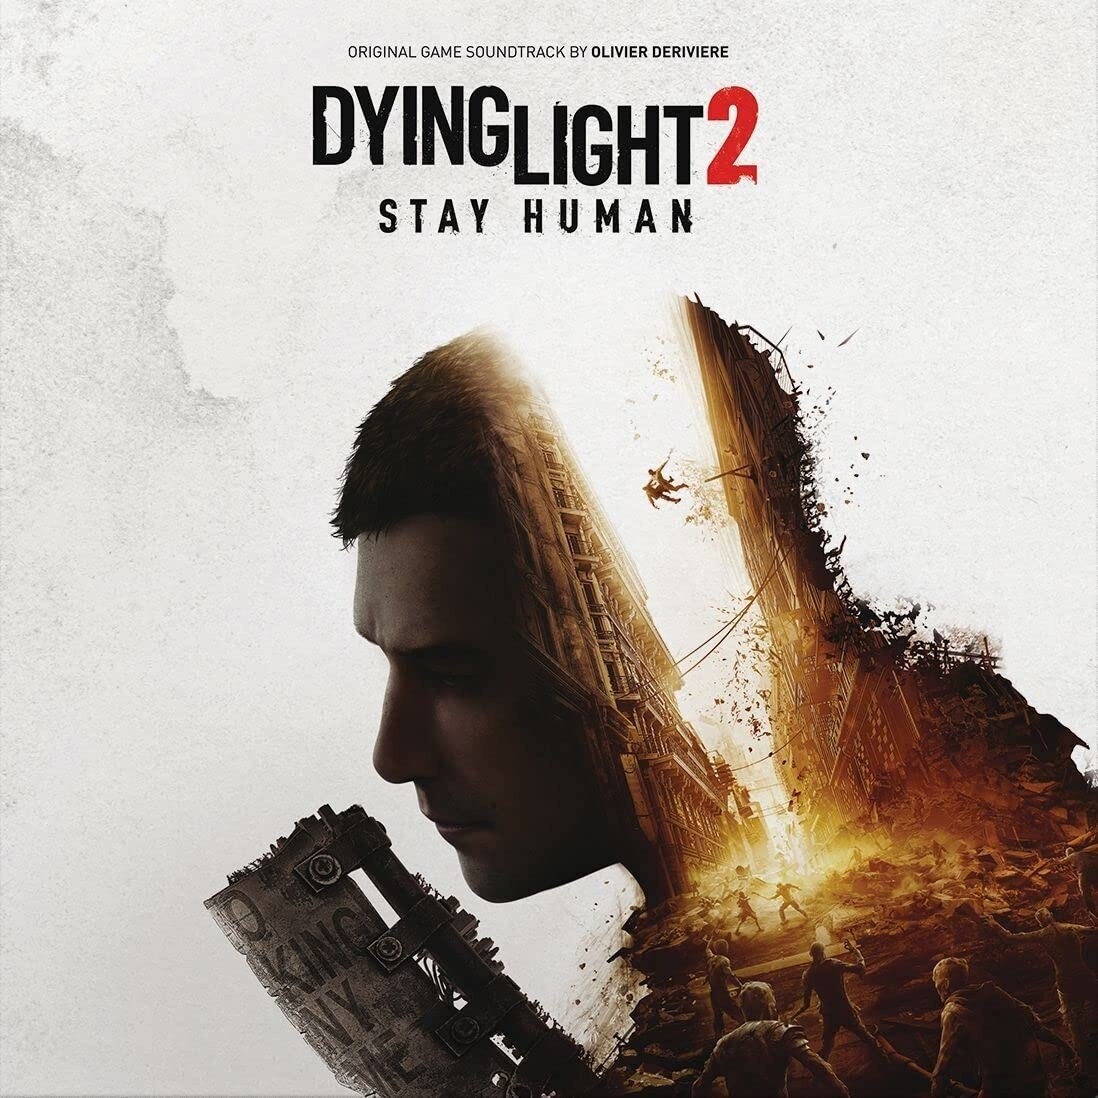 Oficiální soundtrack Dying Light 2 Stay Human na CD - 04059251479901